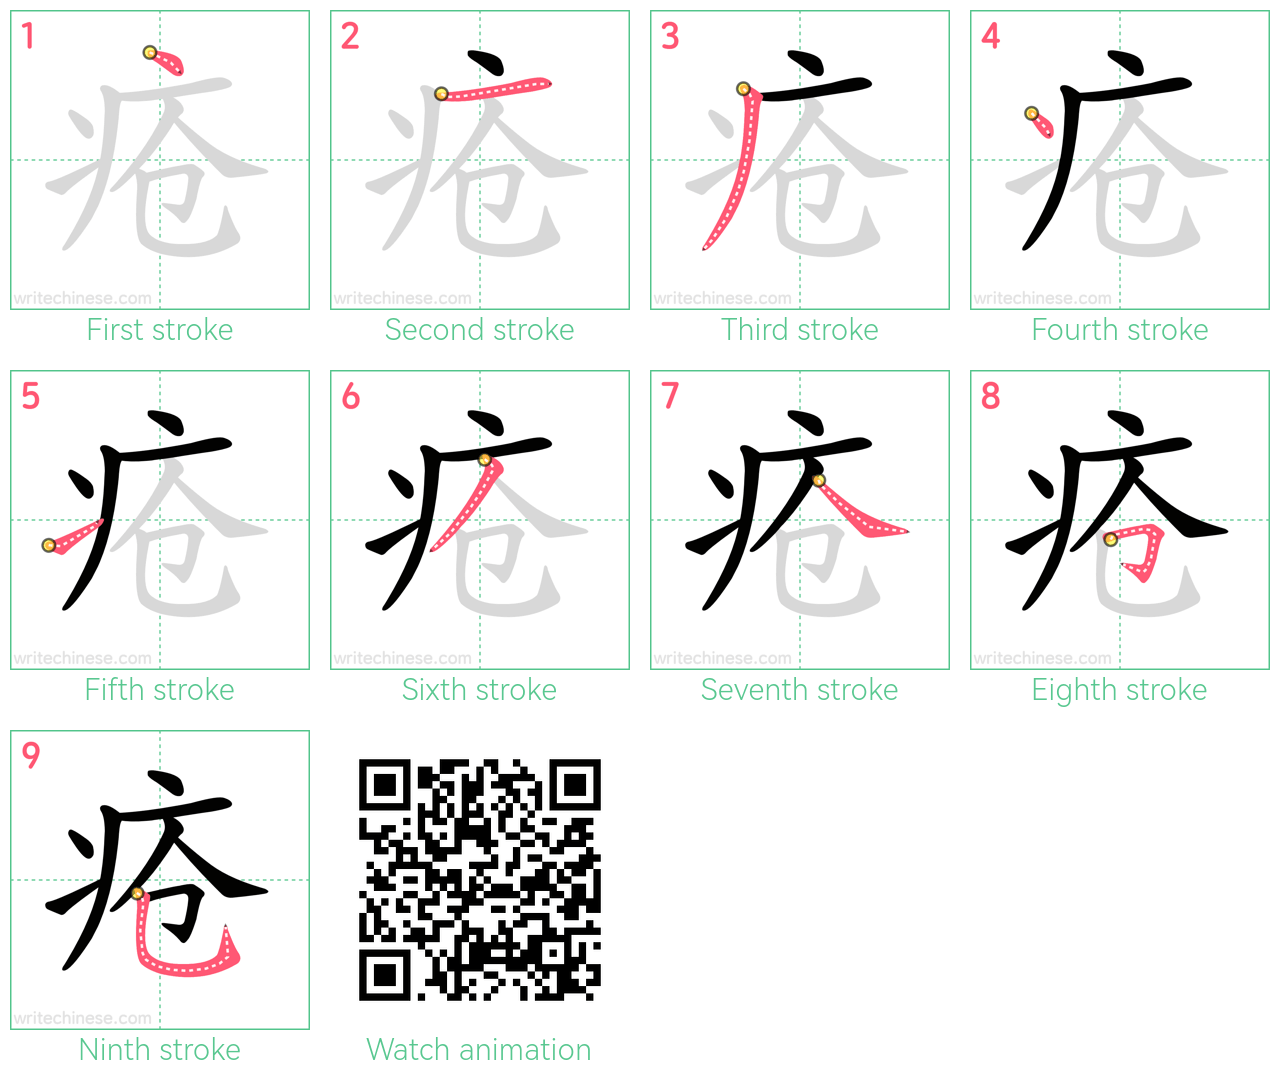 疮 step-by-step stroke order diagrams